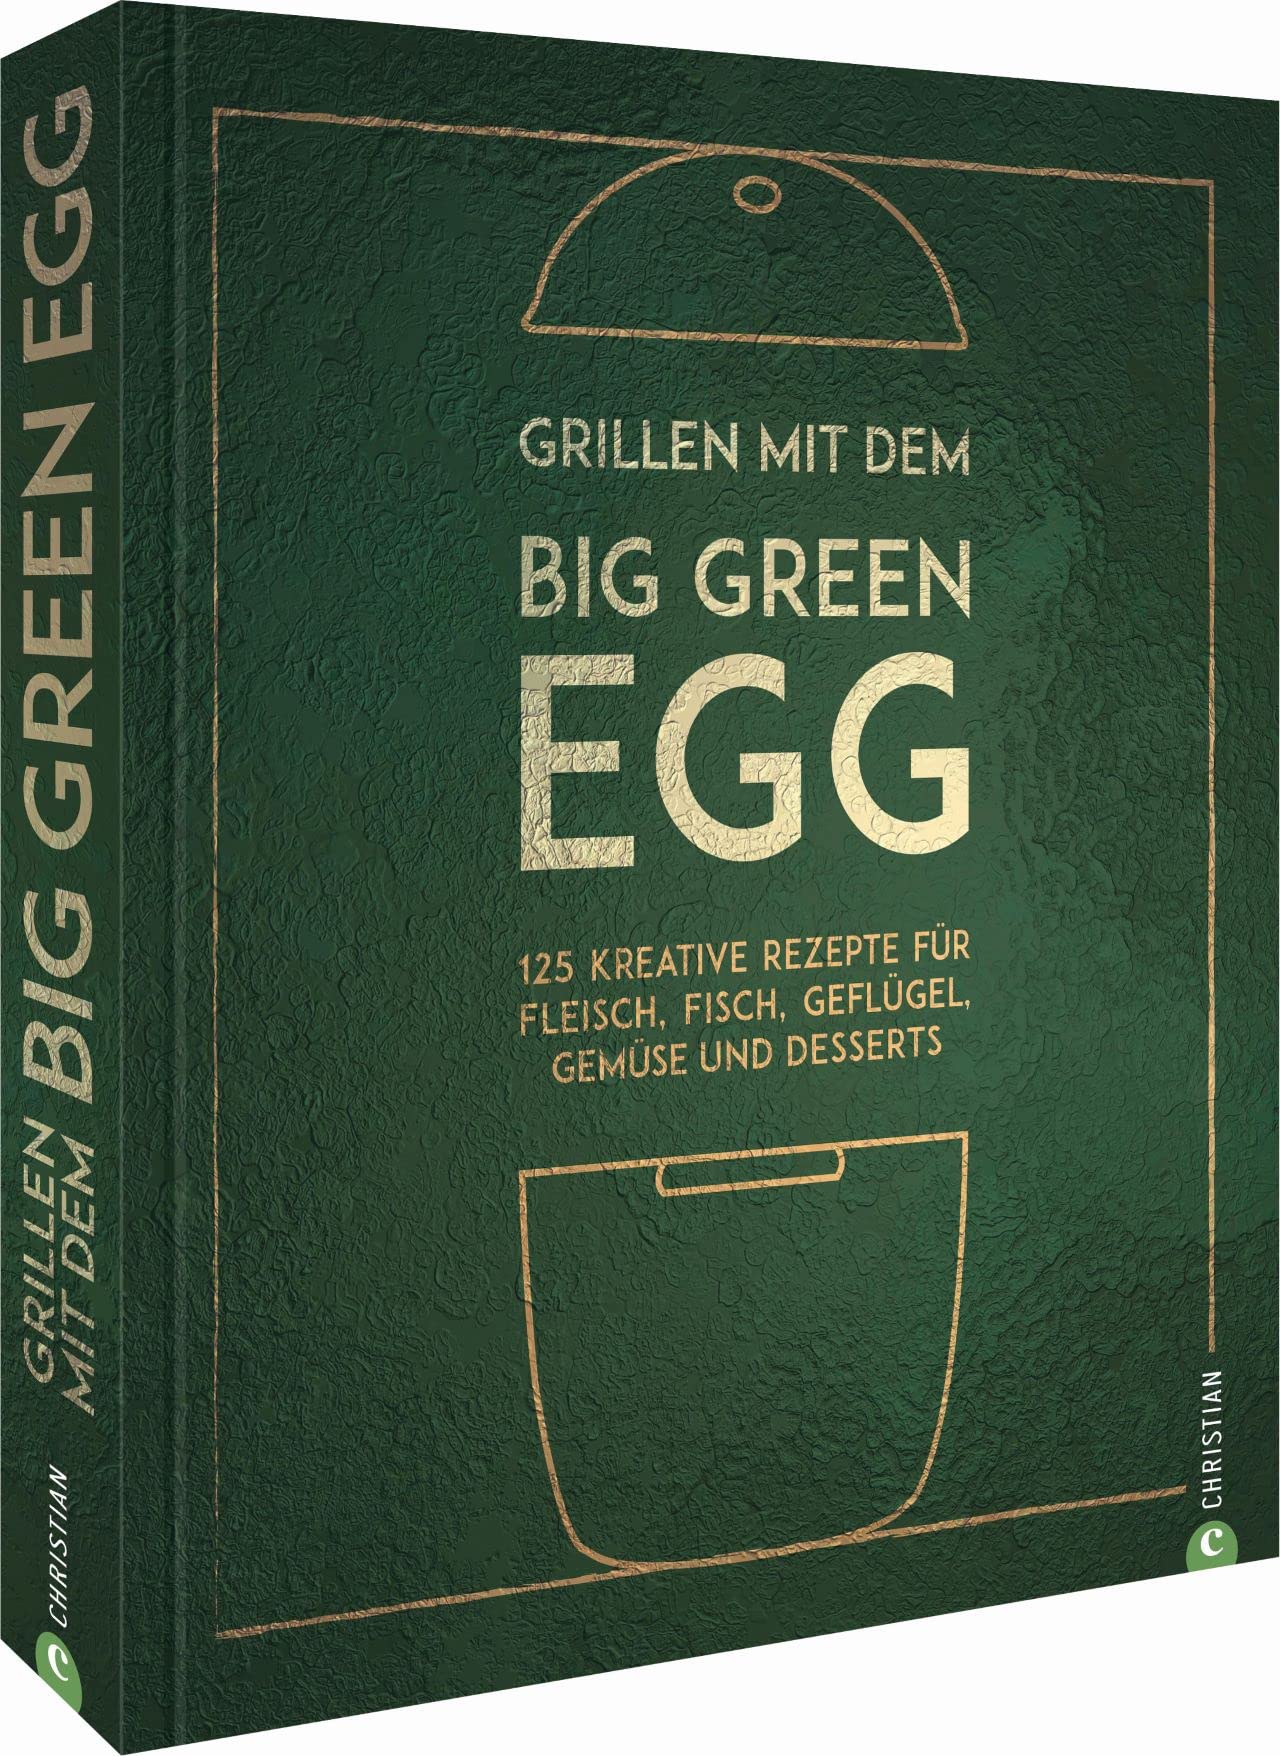 Big Green Egg - Grillen mit dem Big Green Egg